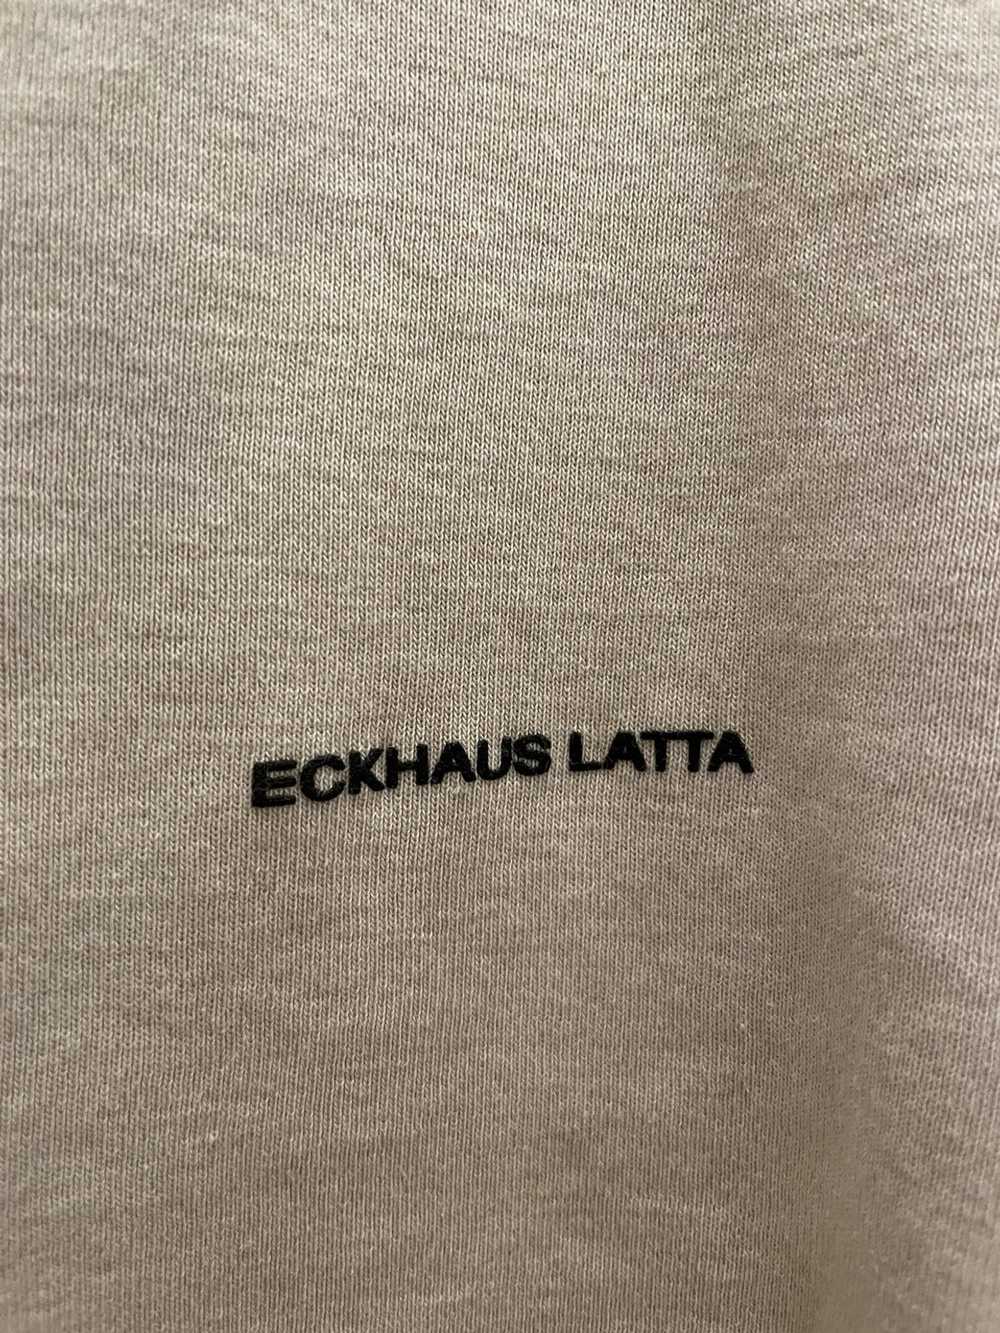 Eckhaus Latta ECKHAUS LATTA long sleeve tshirt - image 2